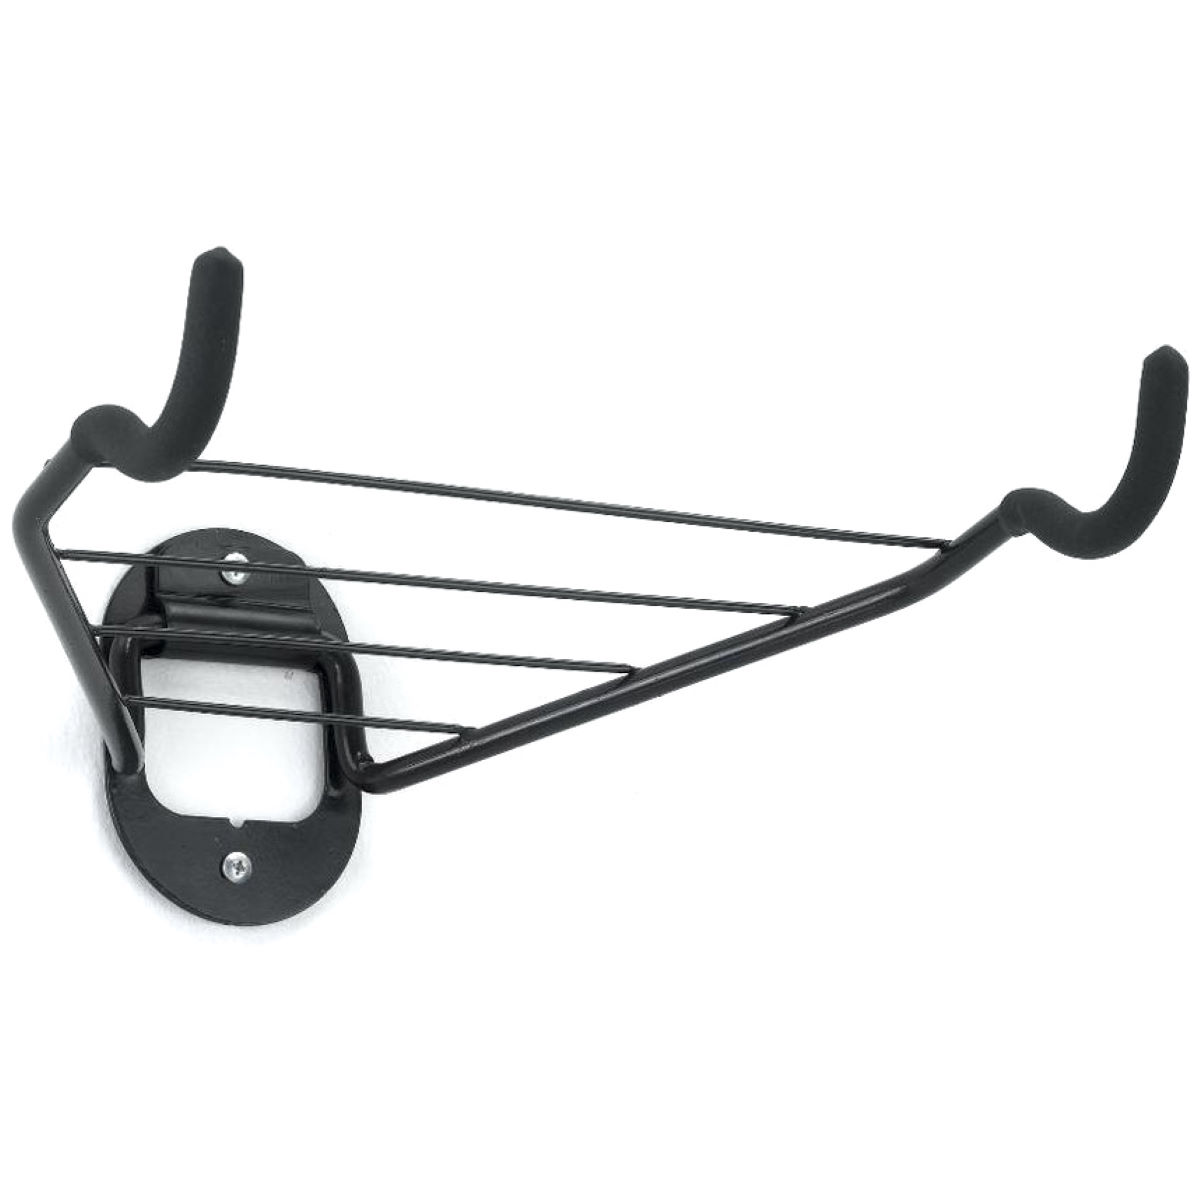 Soporte horizontal de pared Gear Up (para 1 bicicleta) - Soportes para bicicleta